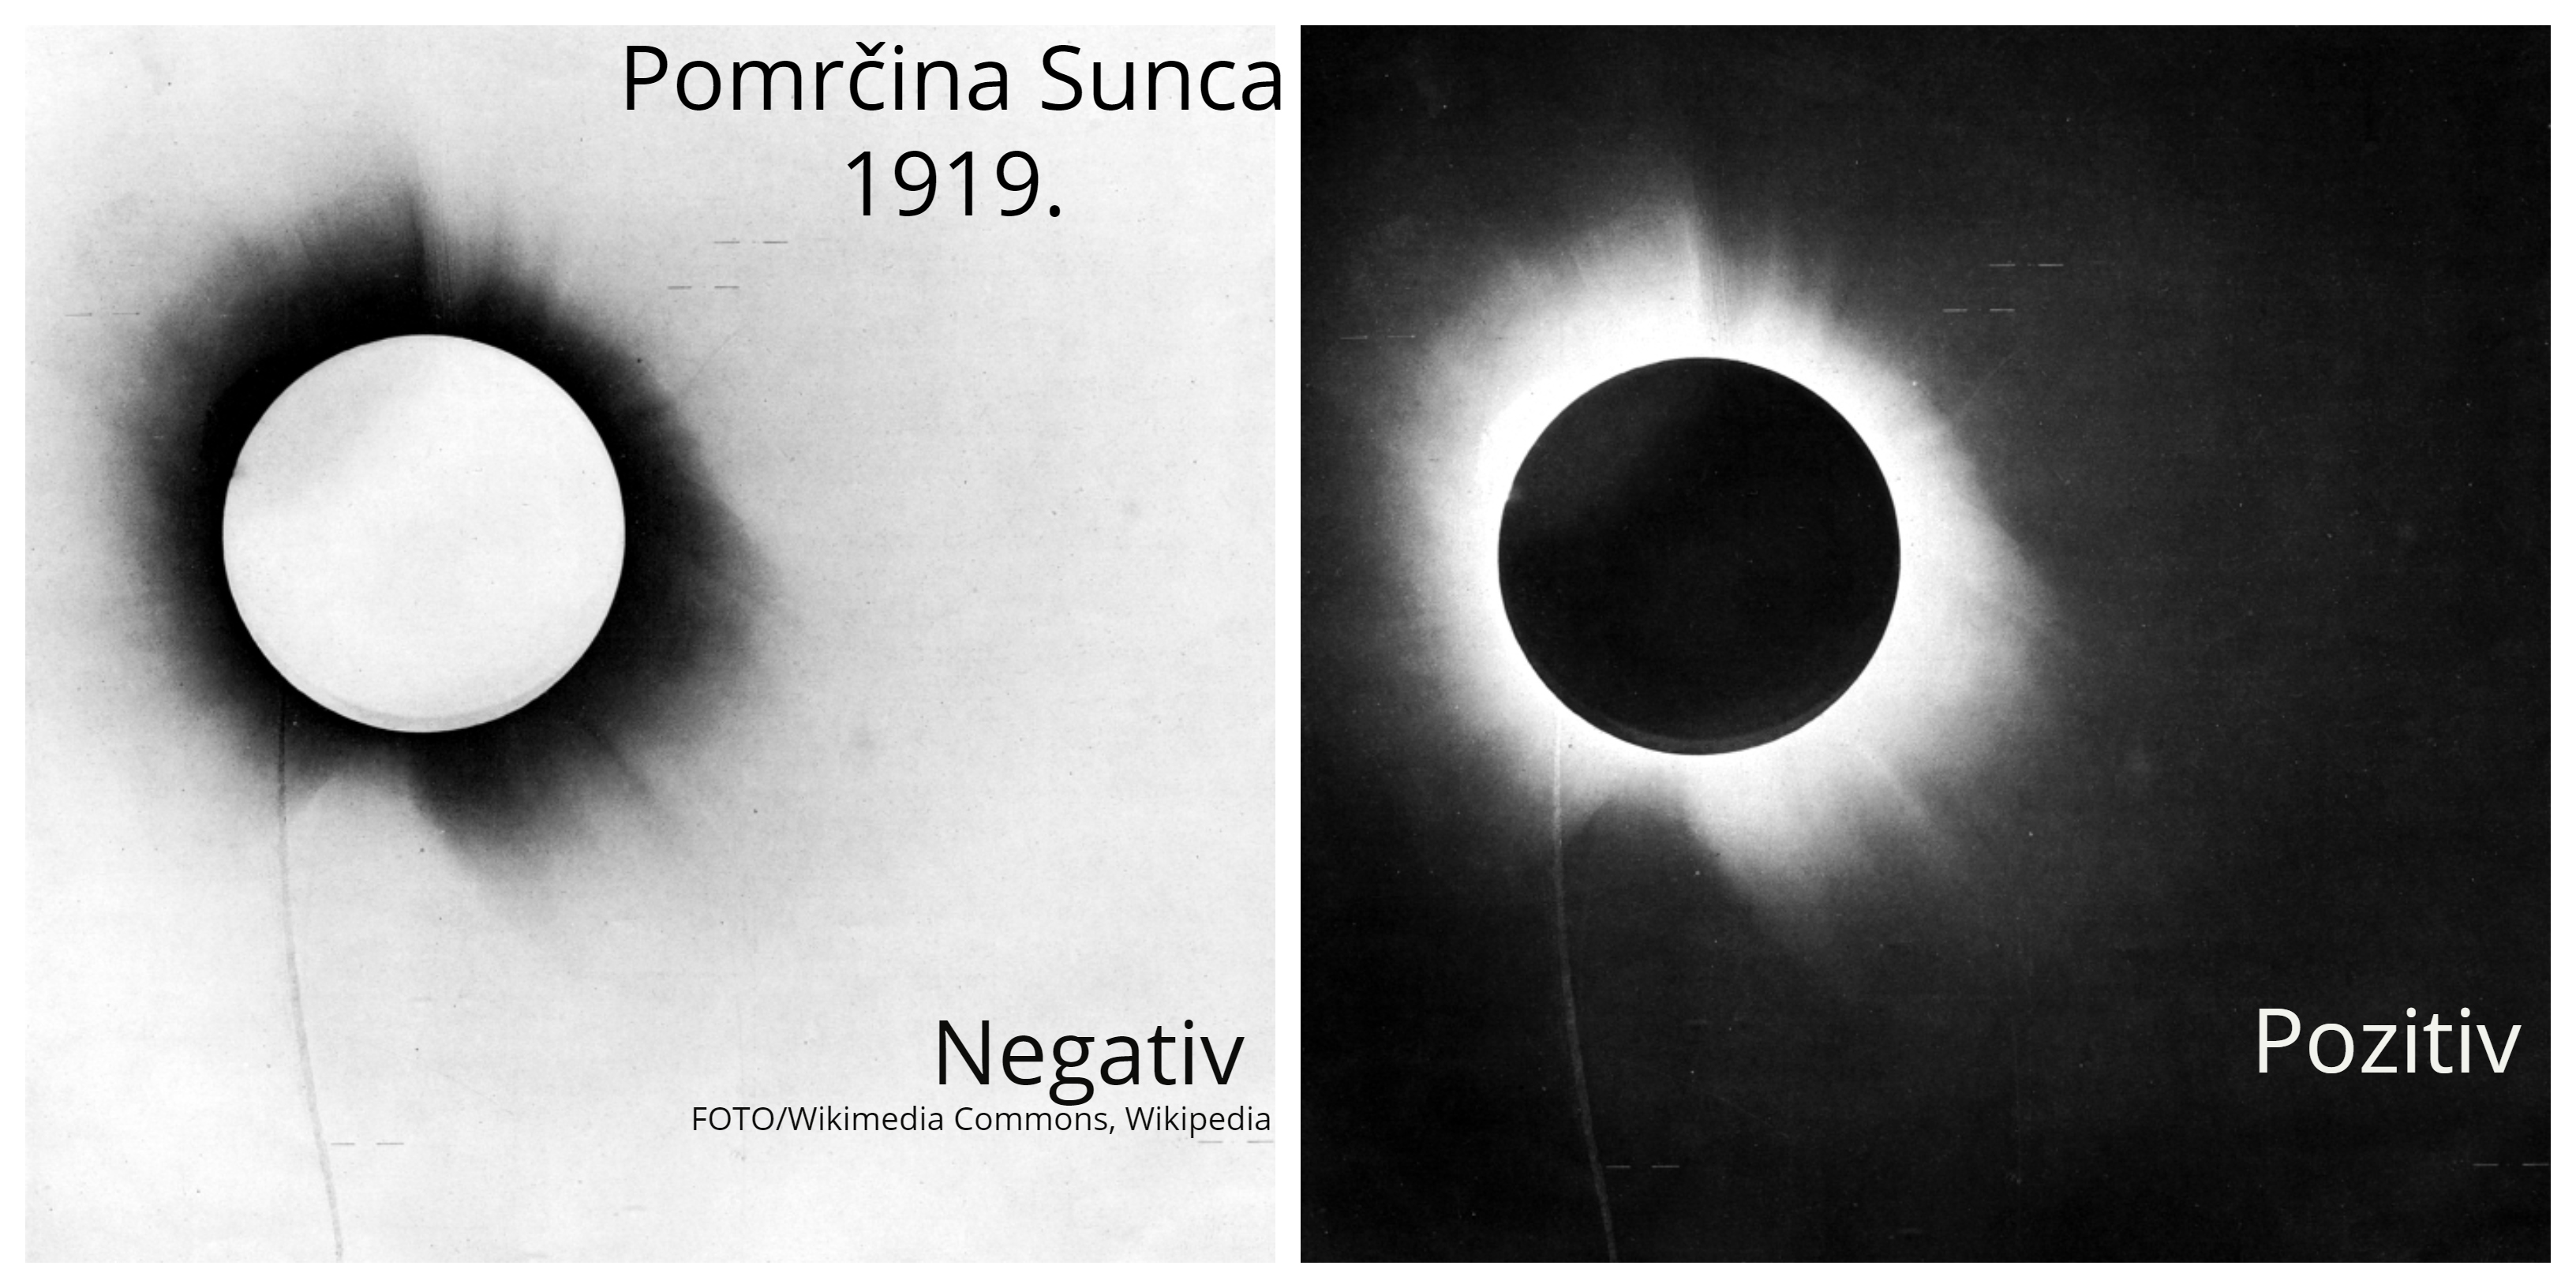 Pomrčina sunca/Potvrda teorije, FOTO/Wikimedia Commons, Wikipedia